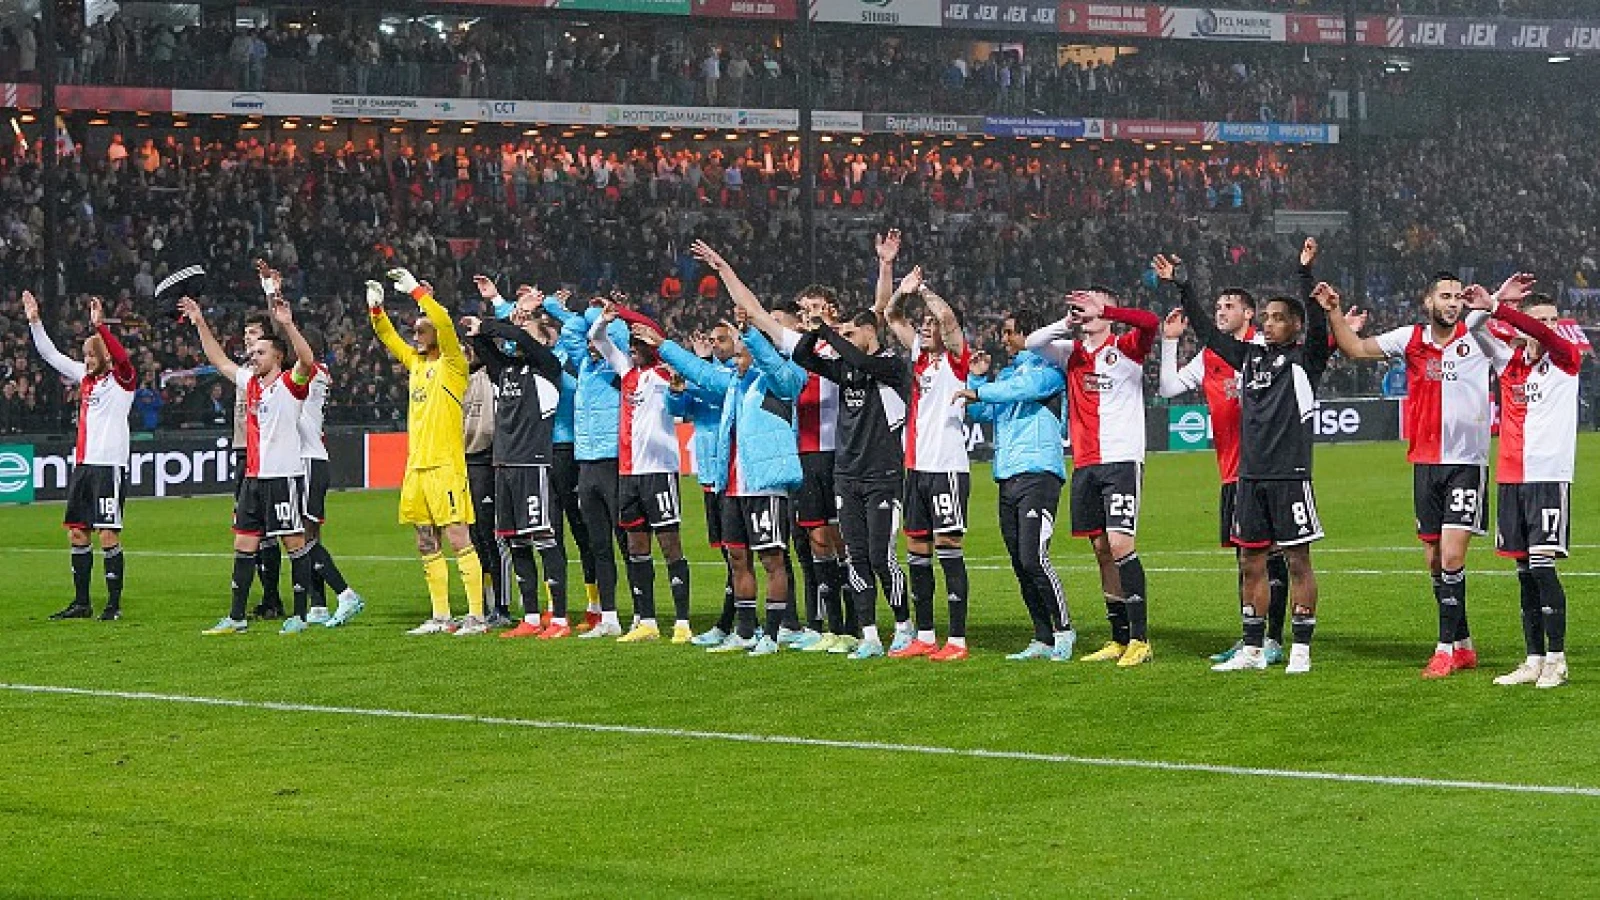 Loting en speeldata Feyenoord in de Europa League